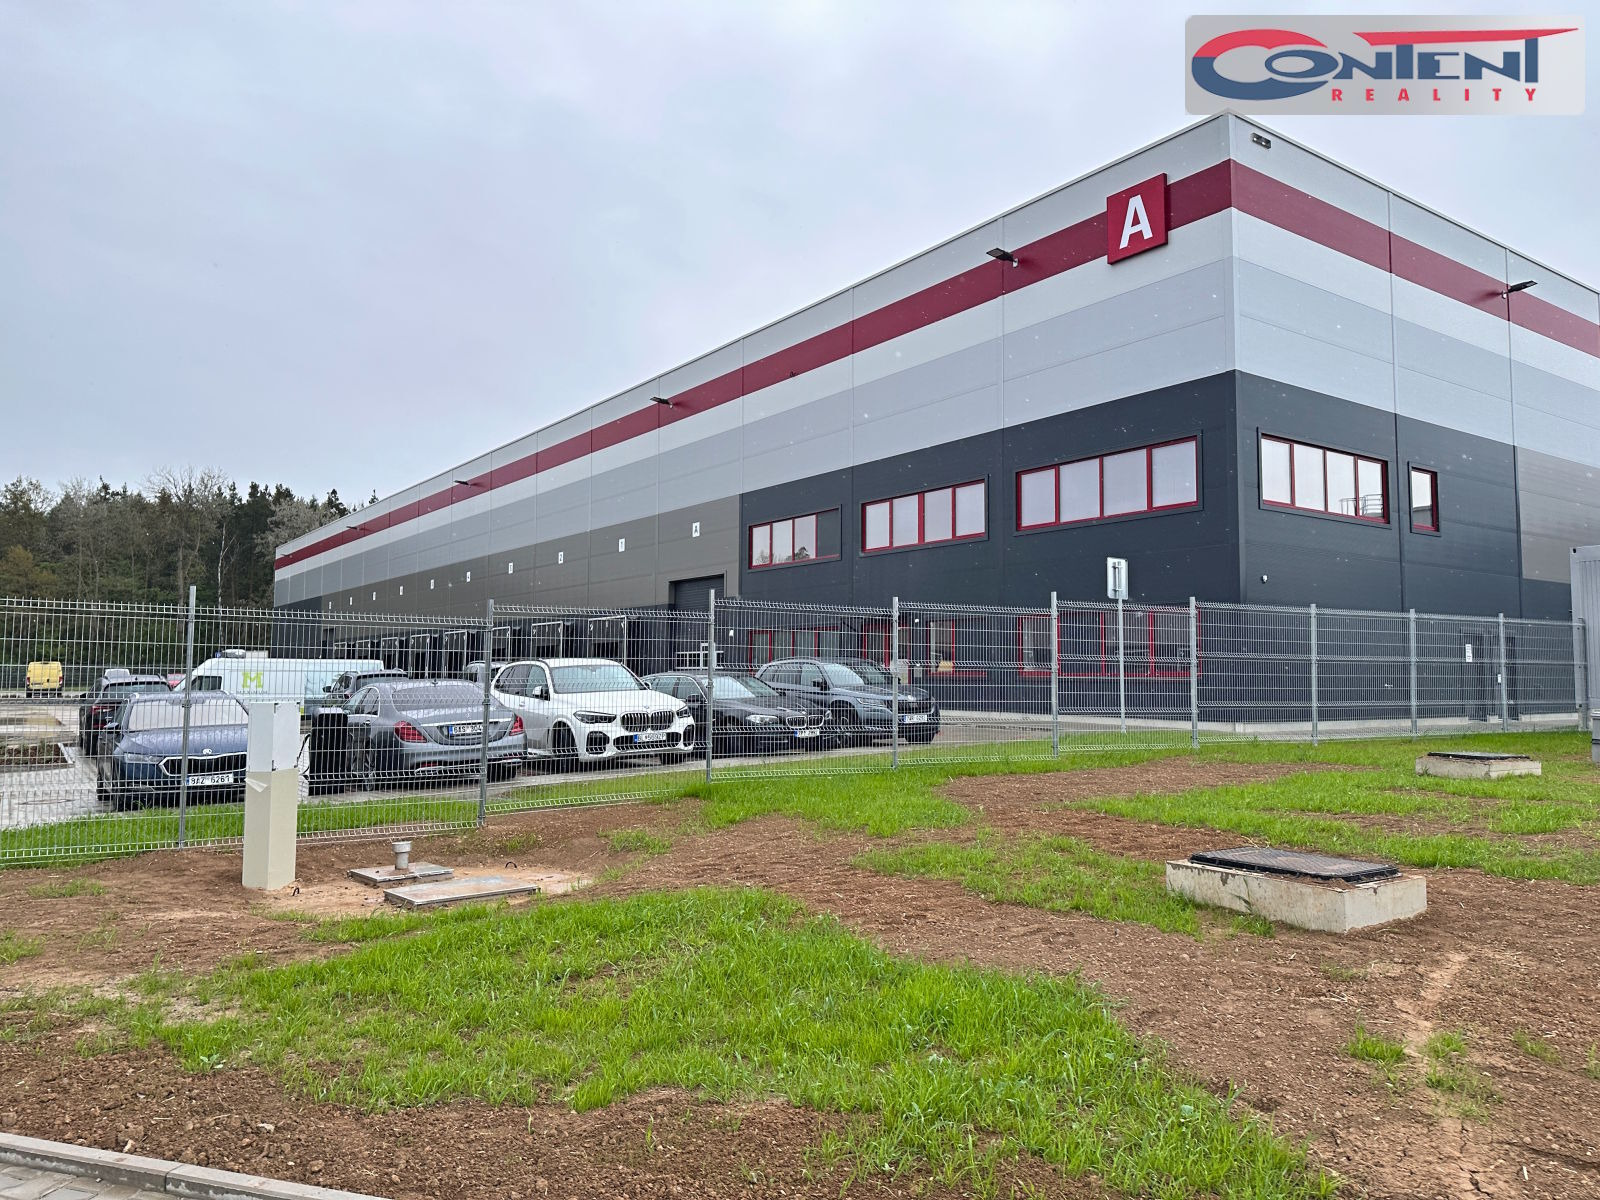 Pronájem skladu, výrobních prostor 8.727 m², Plzeň - Myslinka, D5